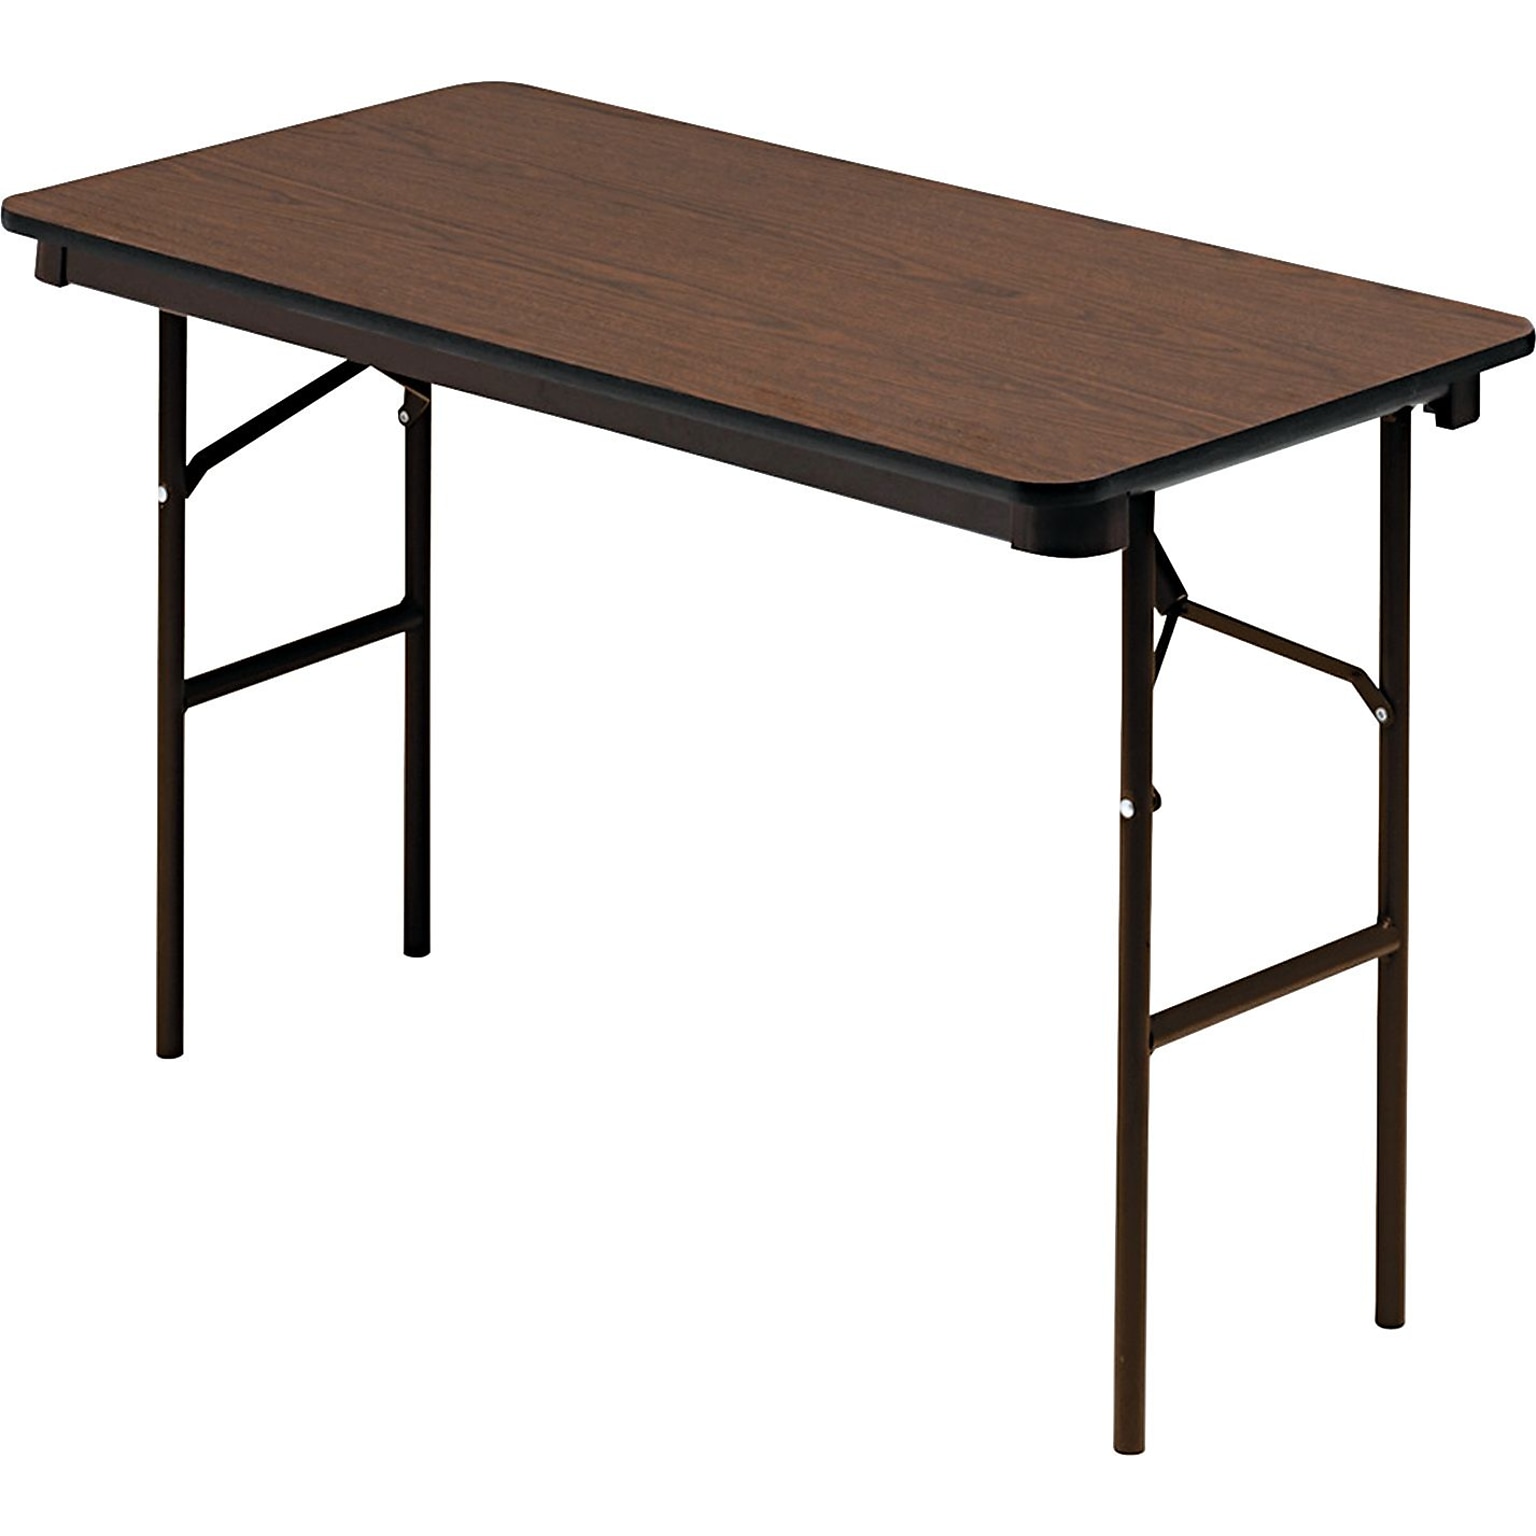 Iceberg® Economy Wood Laminate Folding Tables, 48x24, Walnut